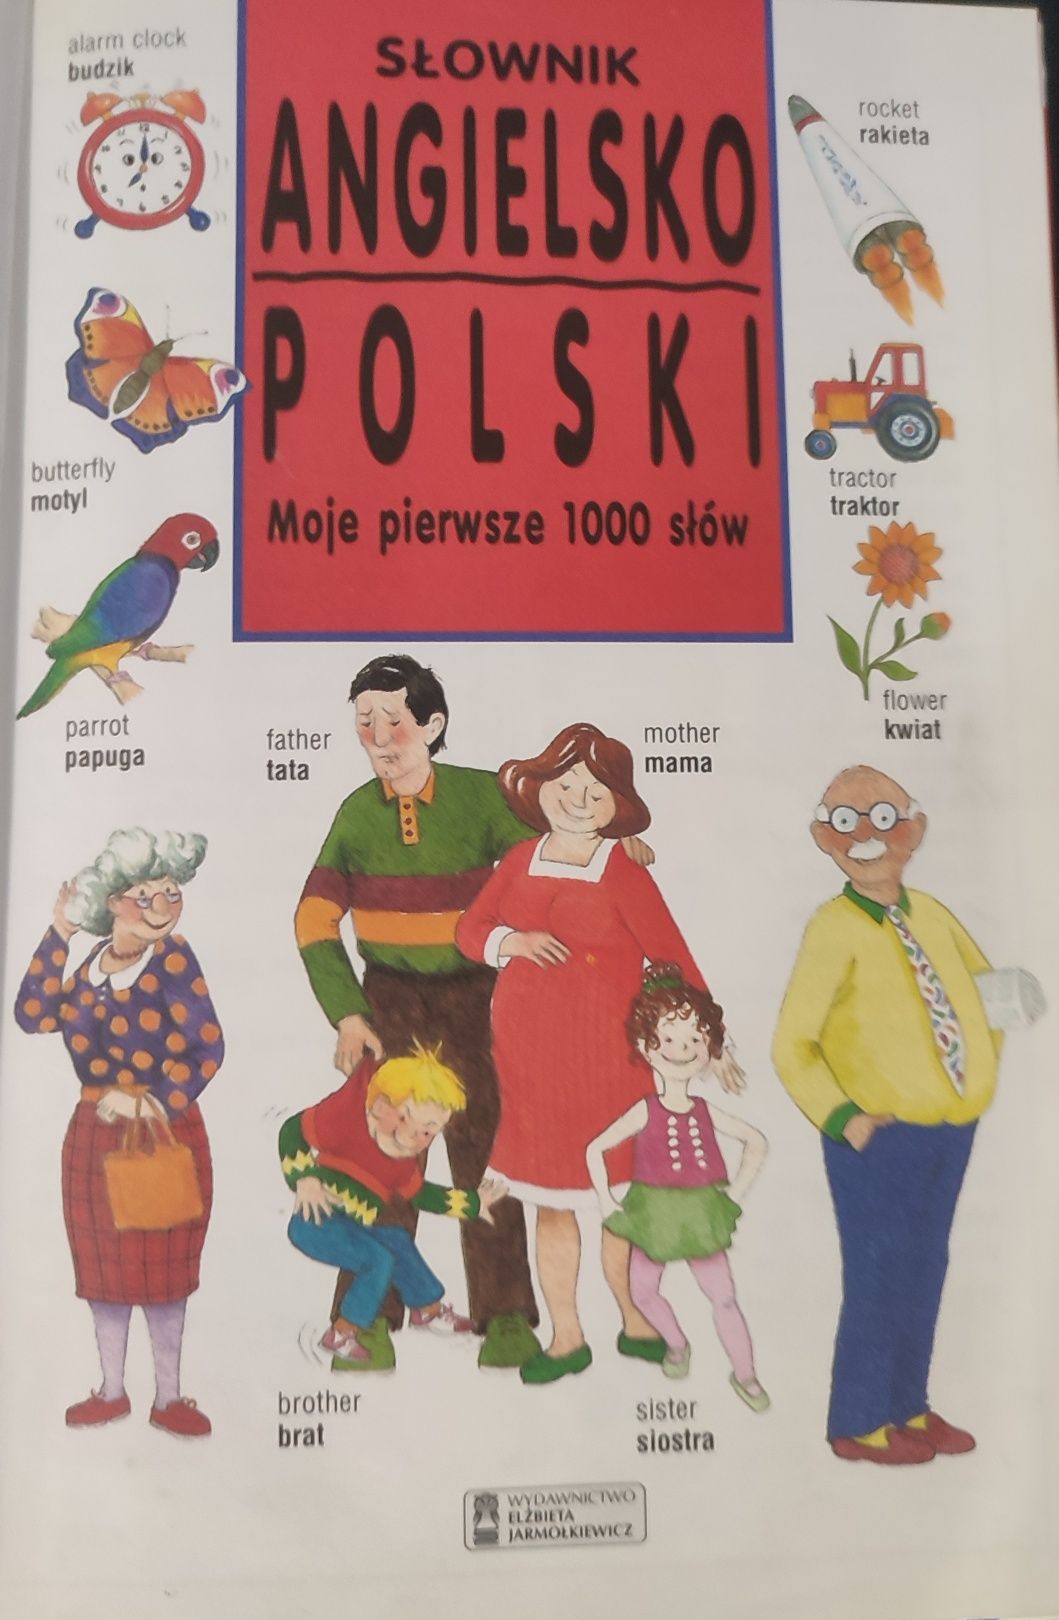 Słowkik angielsko-polski moje pierwsze 1000 słów